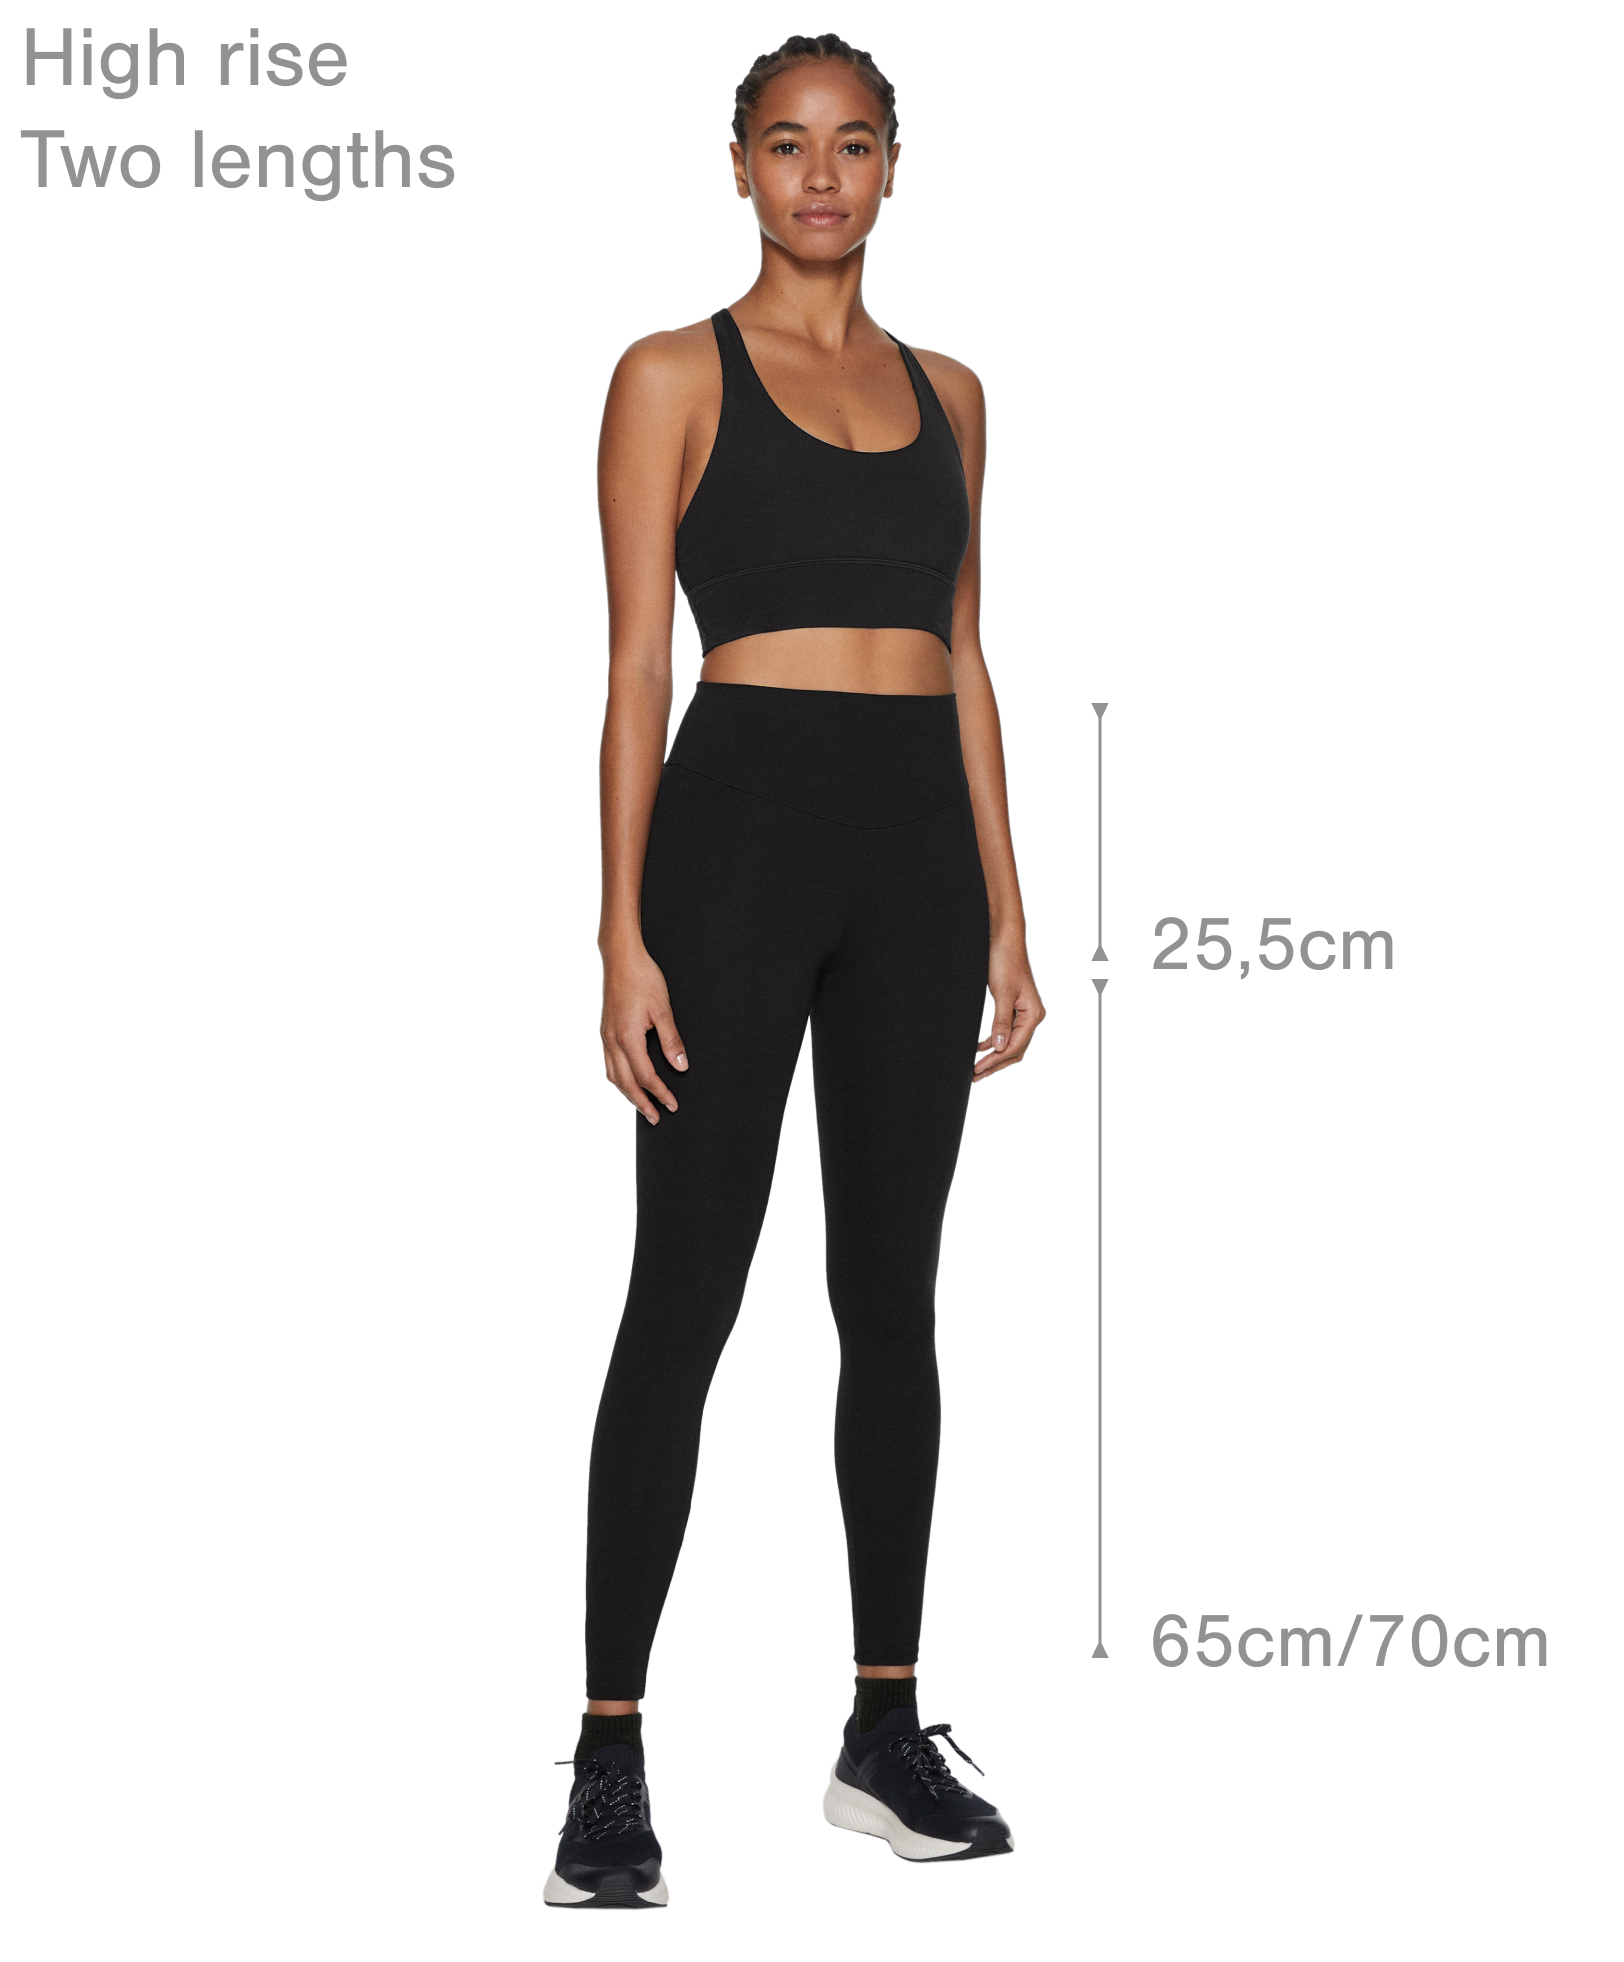 Comfortlux high-rise 40cm capri leggings